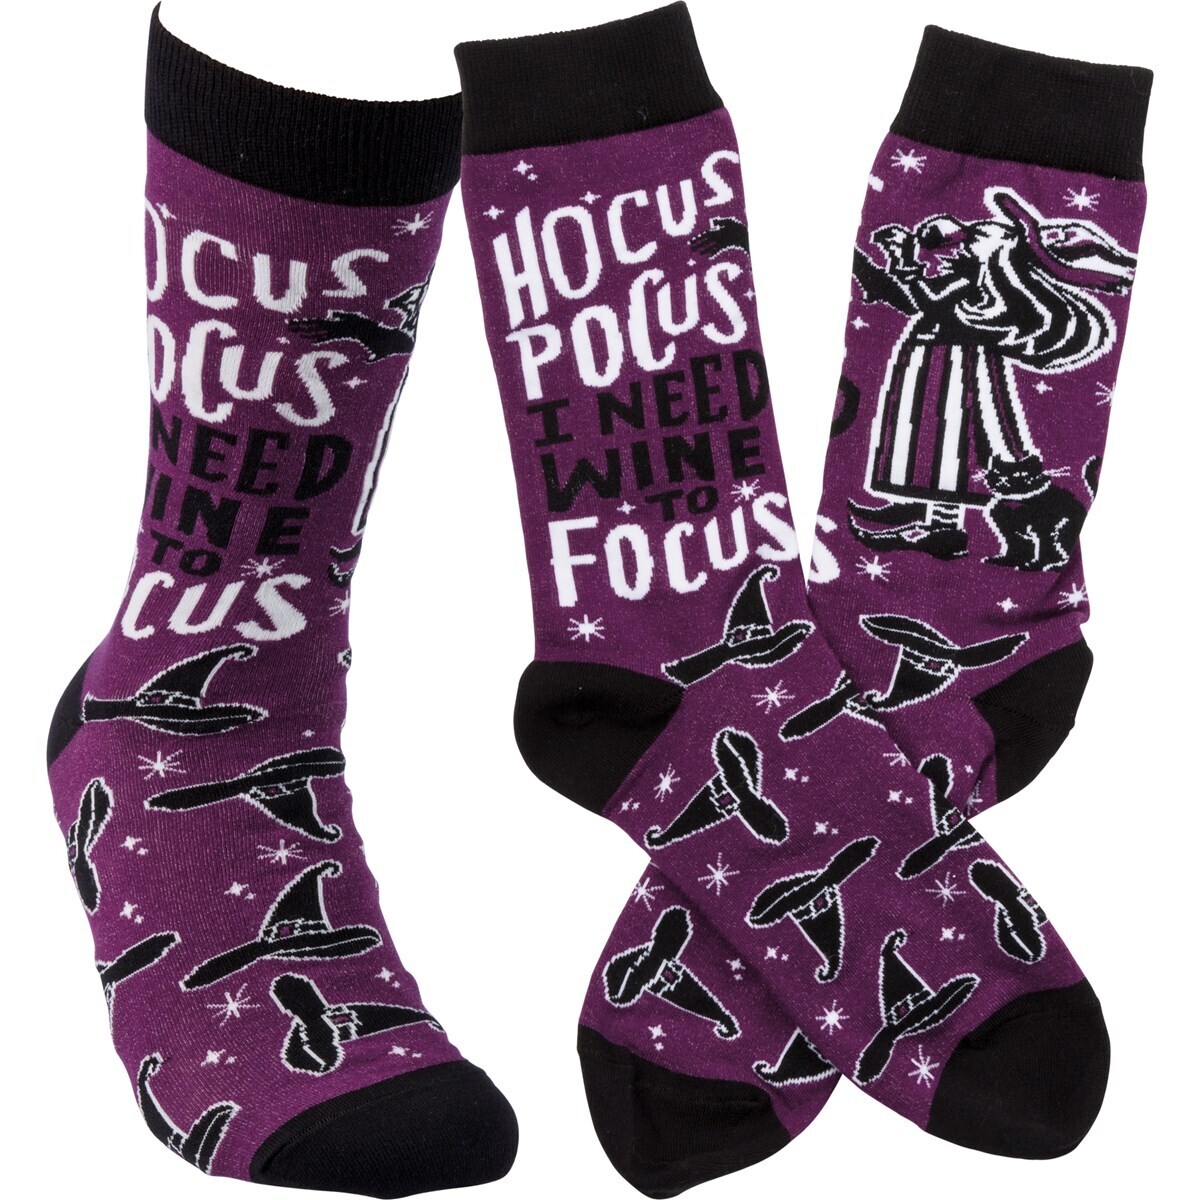 Hocus Pocus I Need Wine To Focus Socks